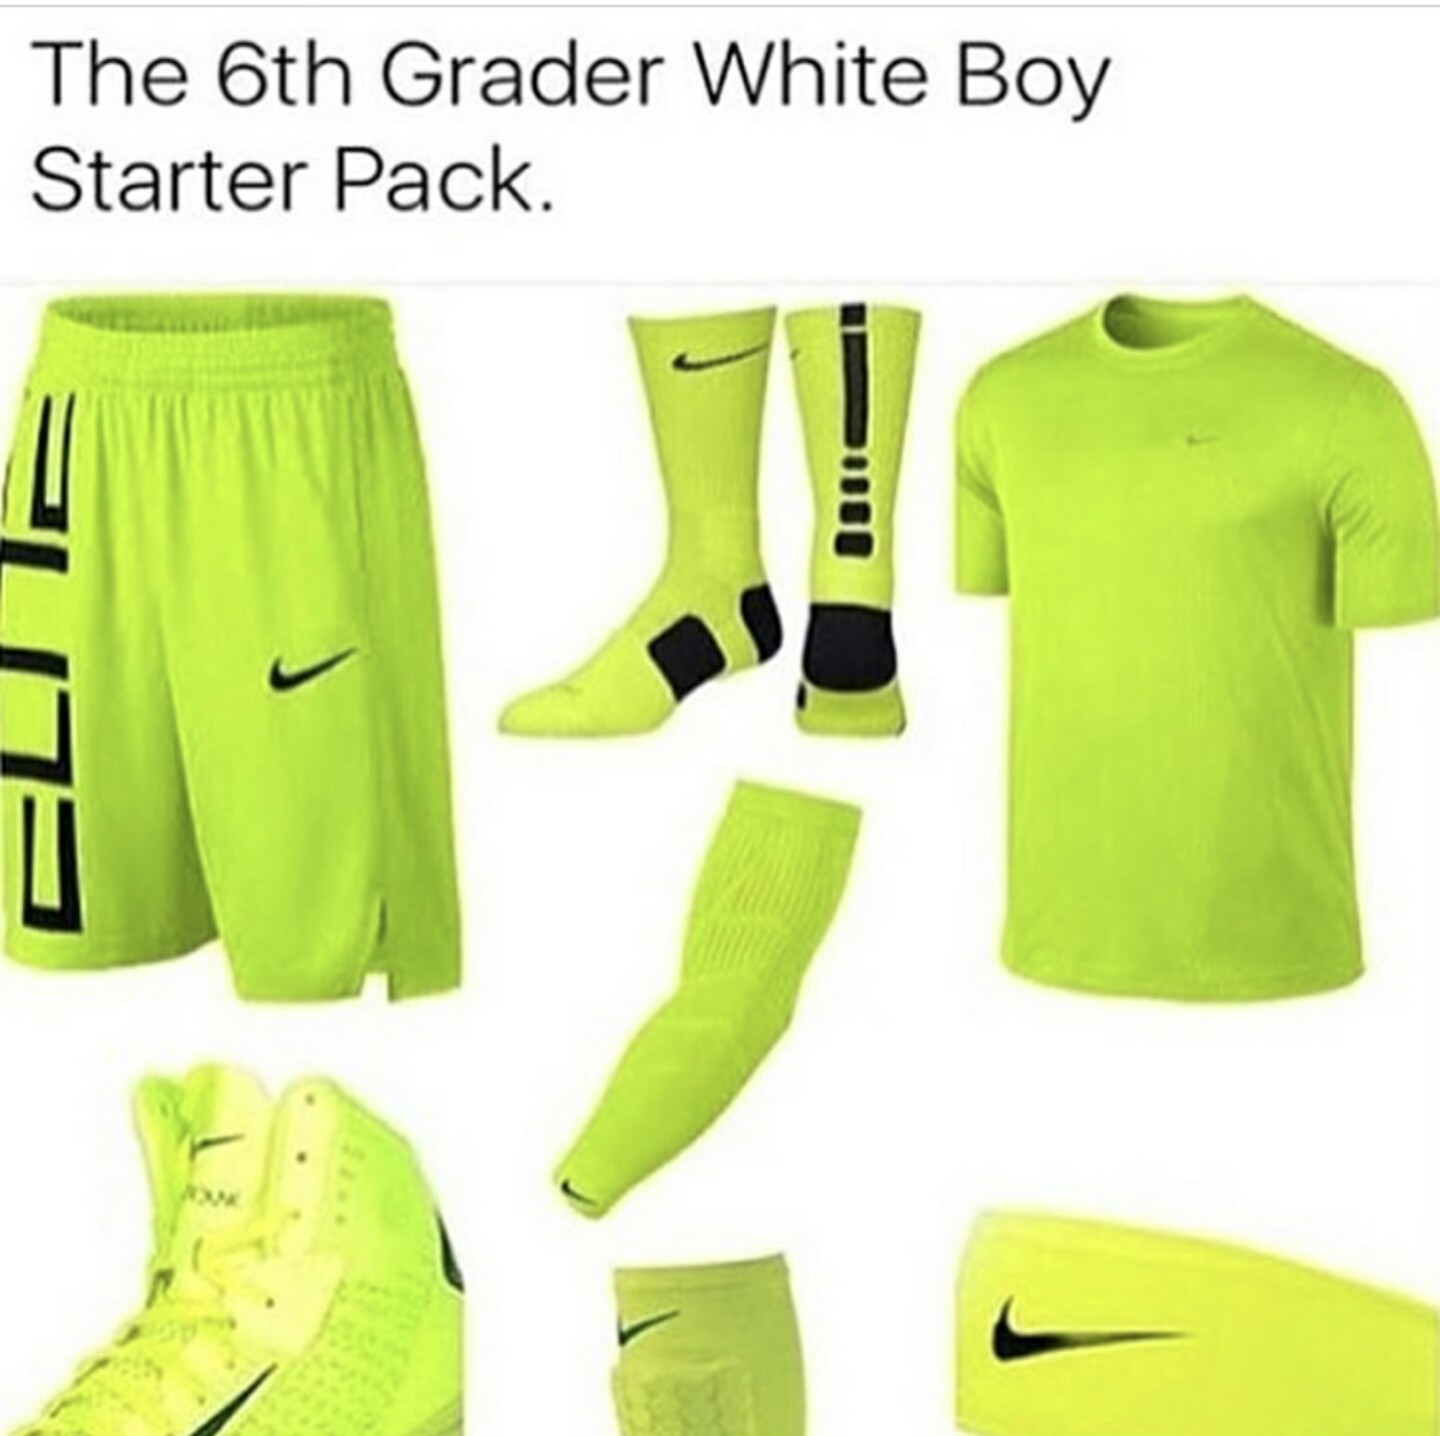 White boy starterpack - meme